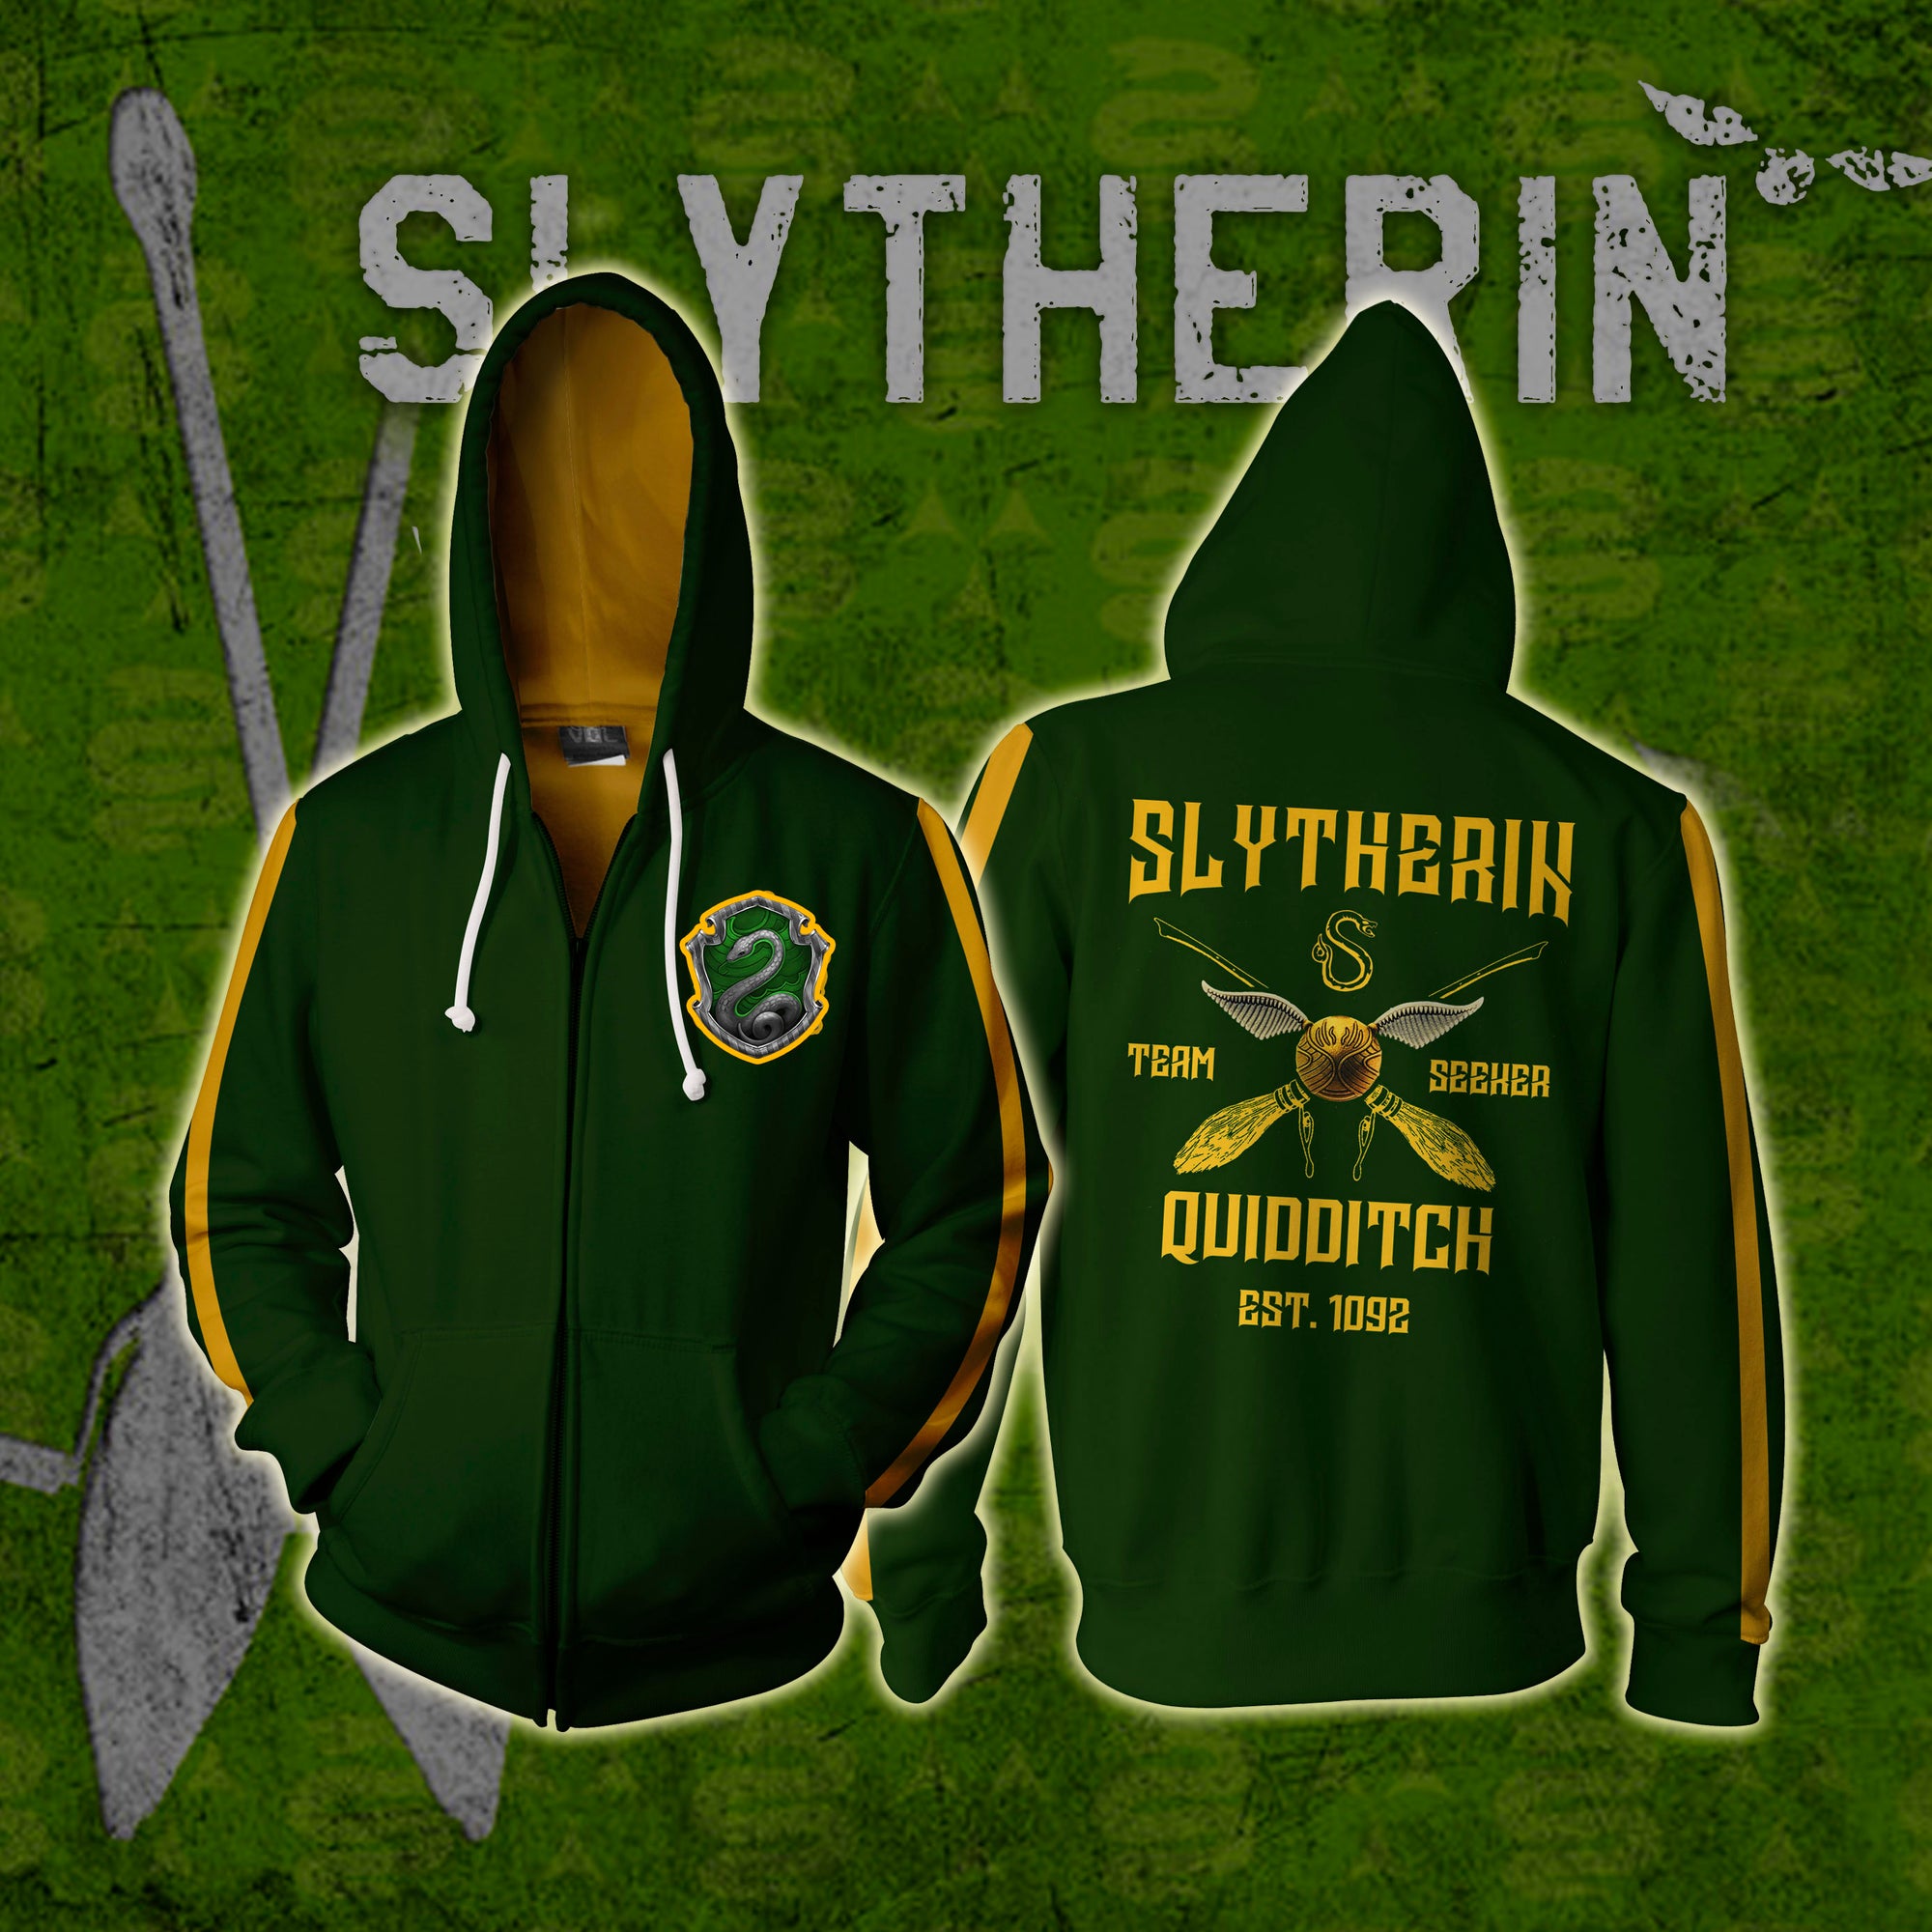 Slytherin Quidditch Team Est 1092 Harry Potter Zip Up Hoodie